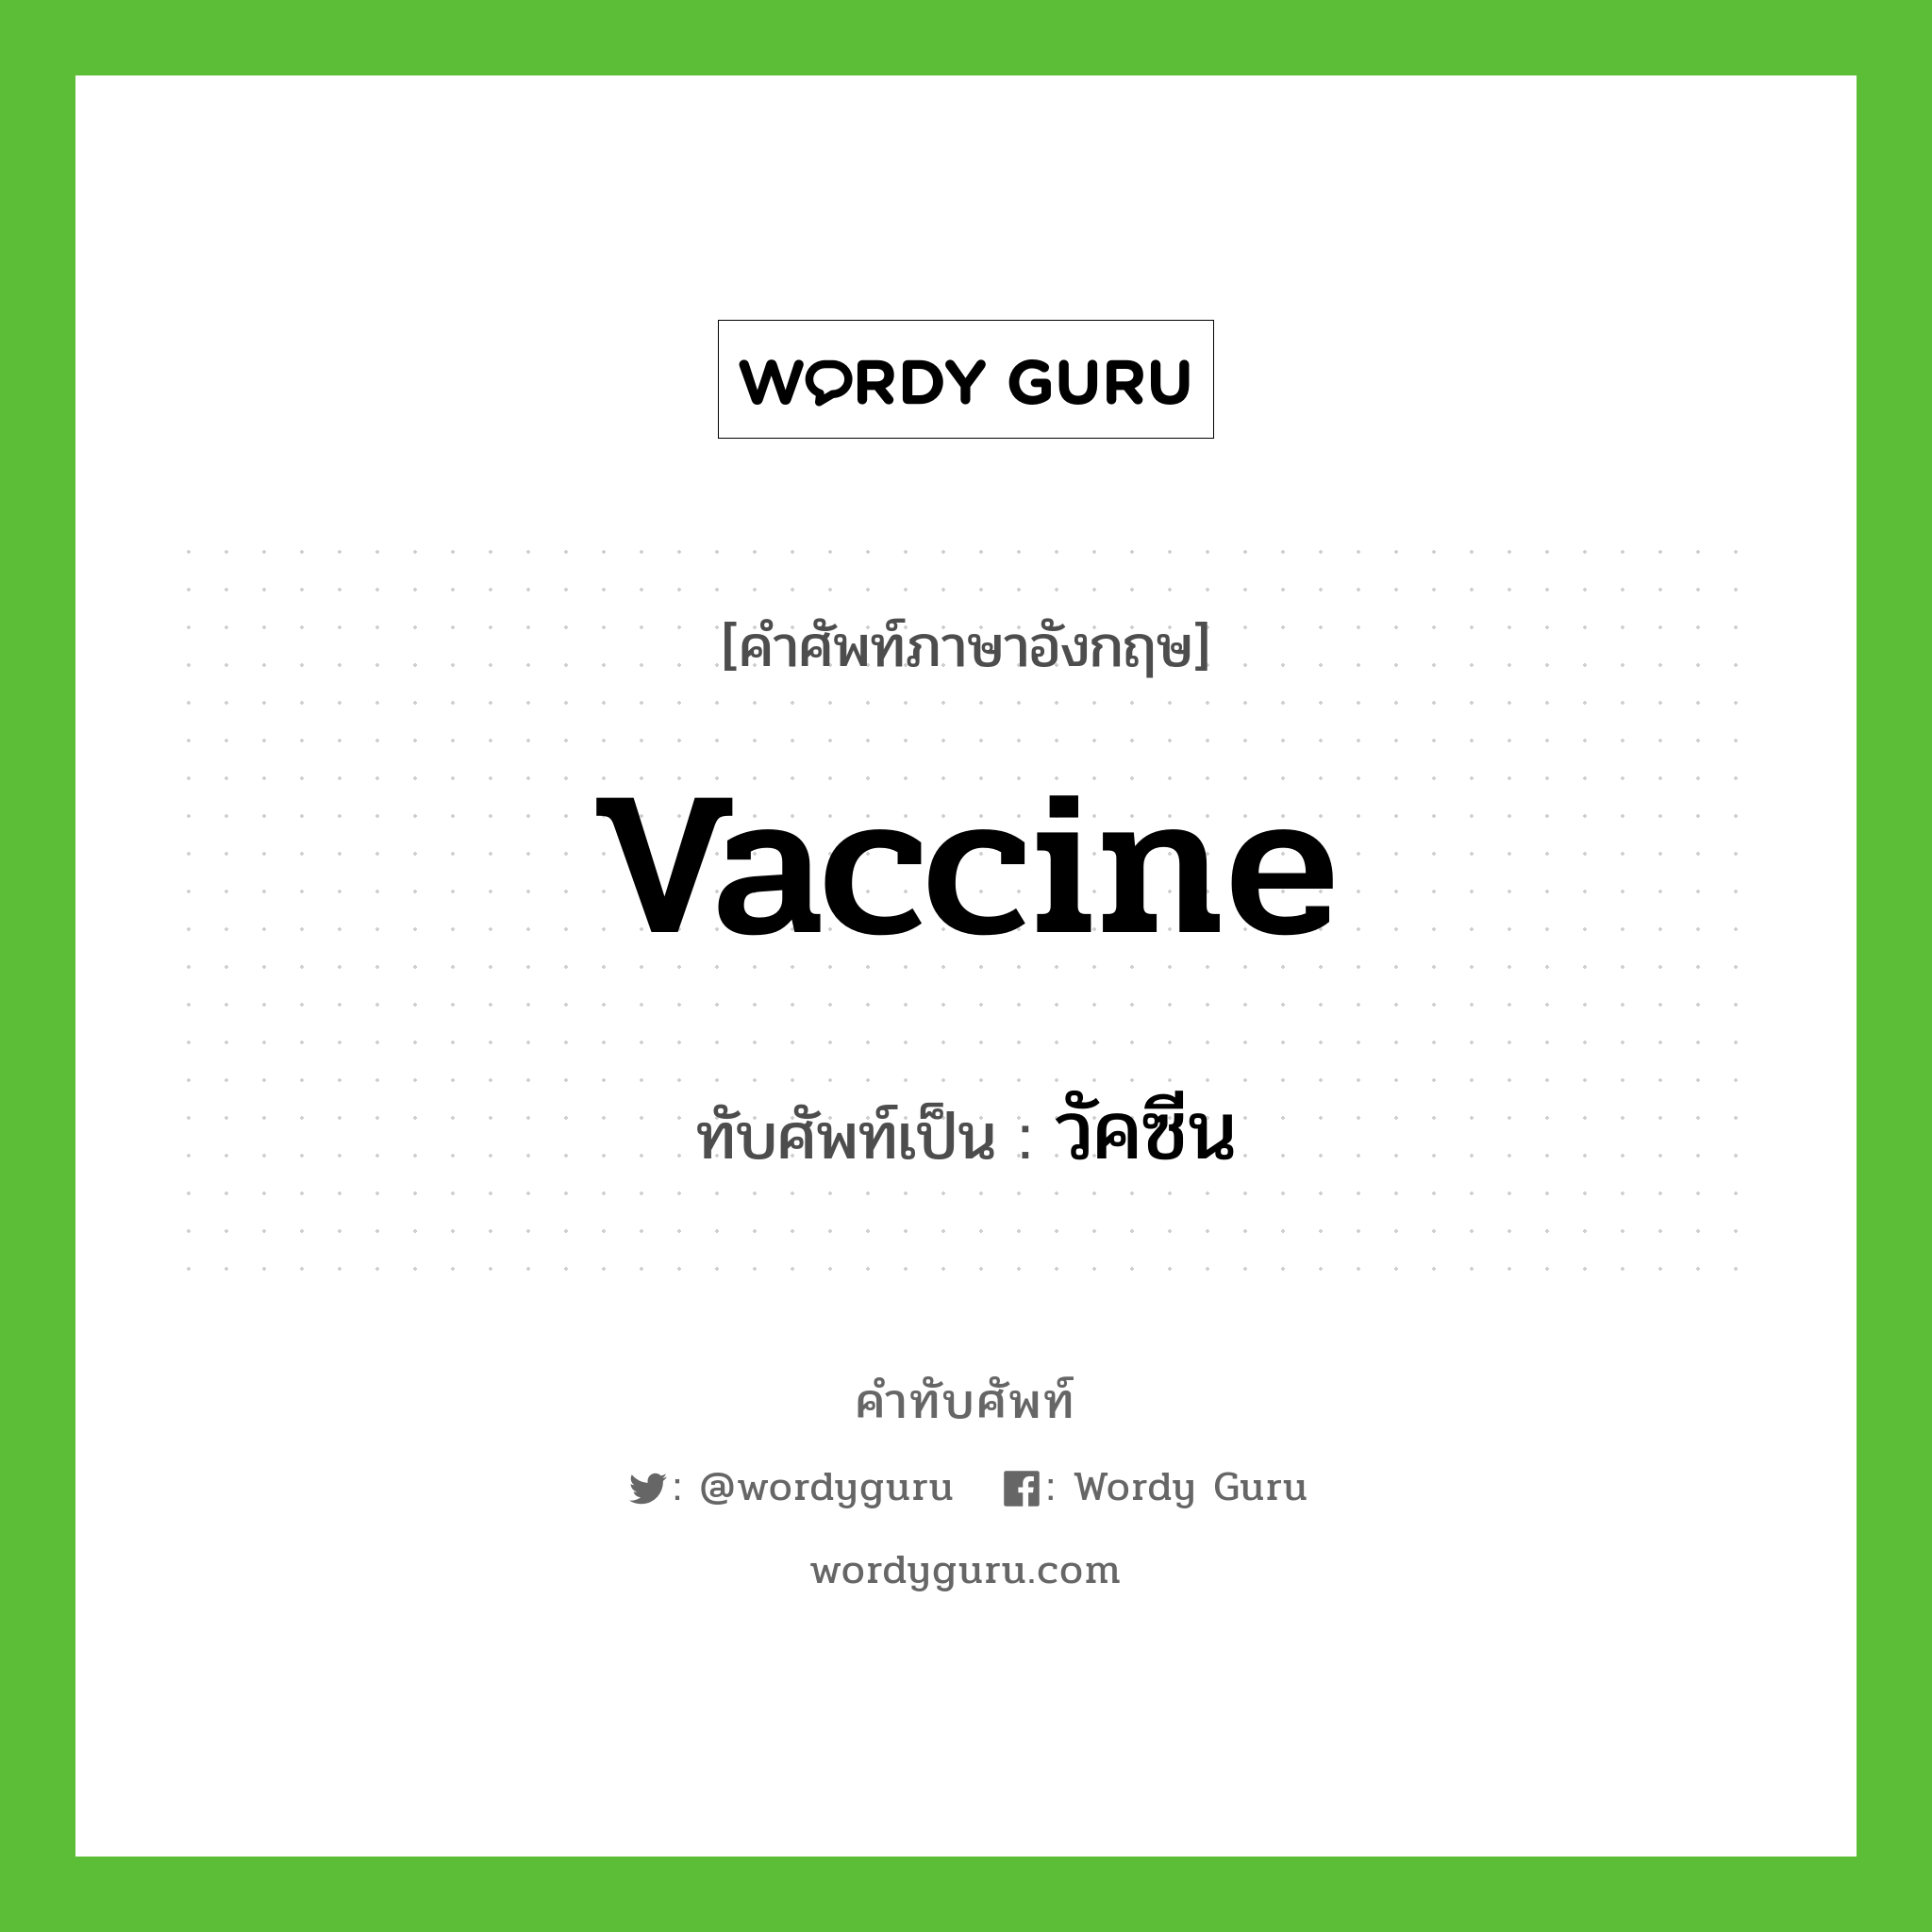 วัคซีน เขียนอย่างไร?, คำศัพท์ภาษาอังกฤษ วัคซีน ทับศัพท์เป็น vaccine